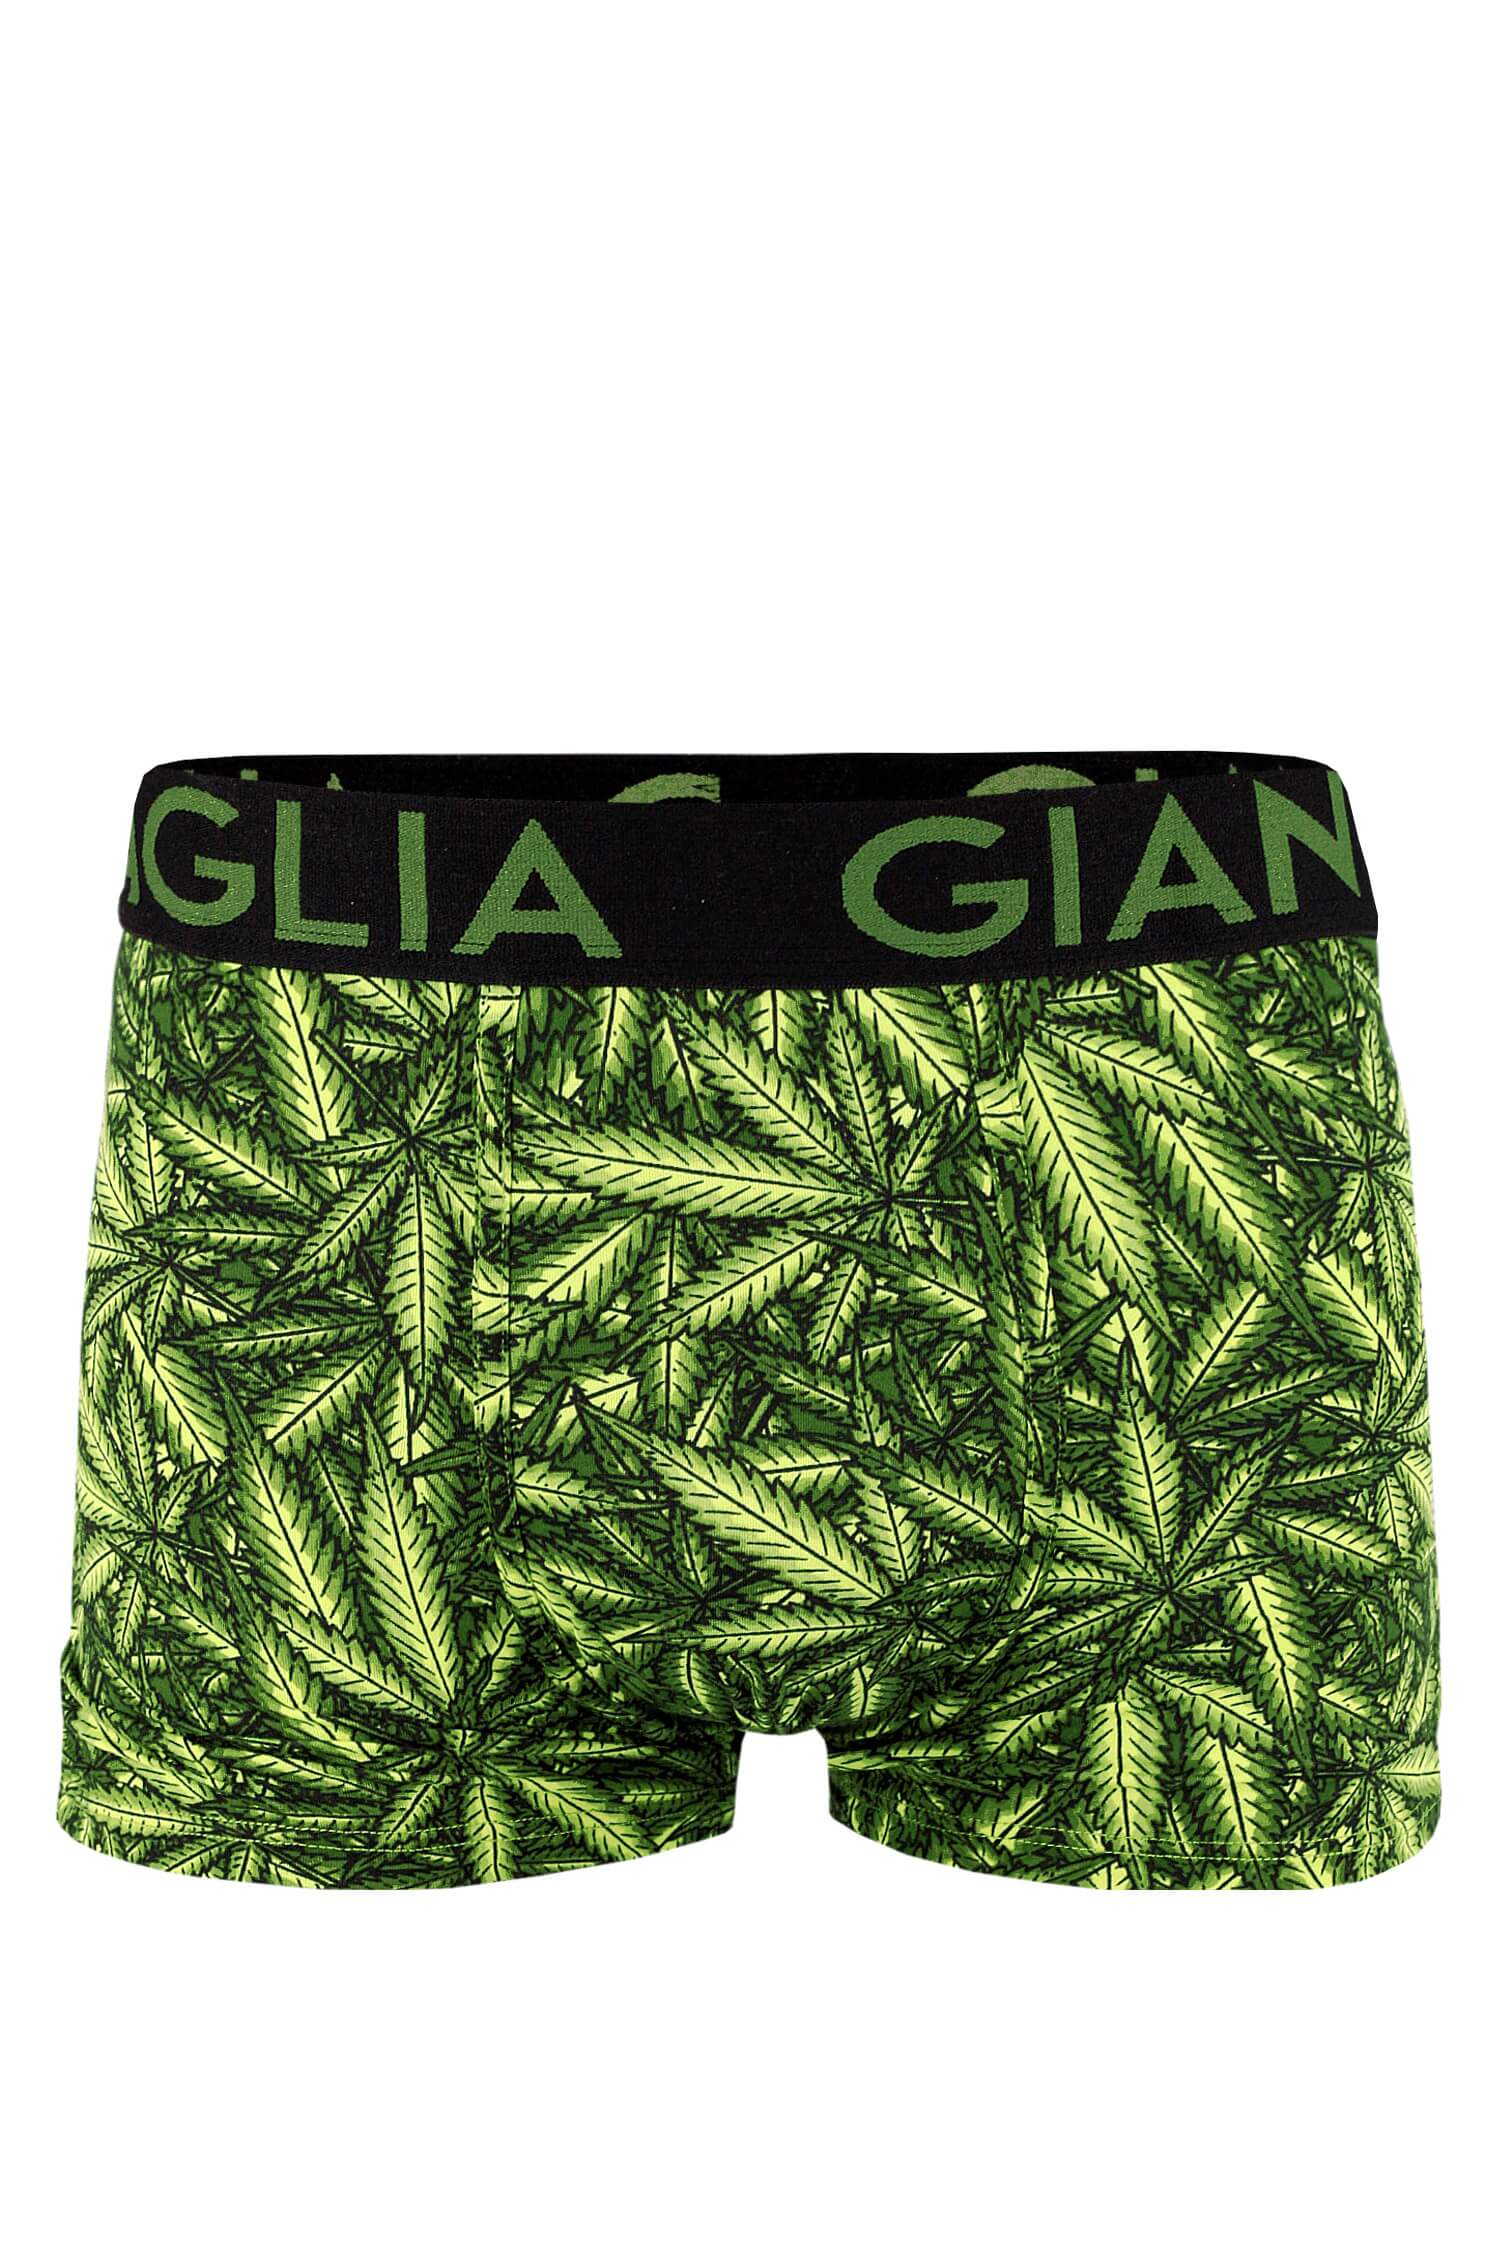 Elvin pánské boxerky vtipné marihuana XL khaki